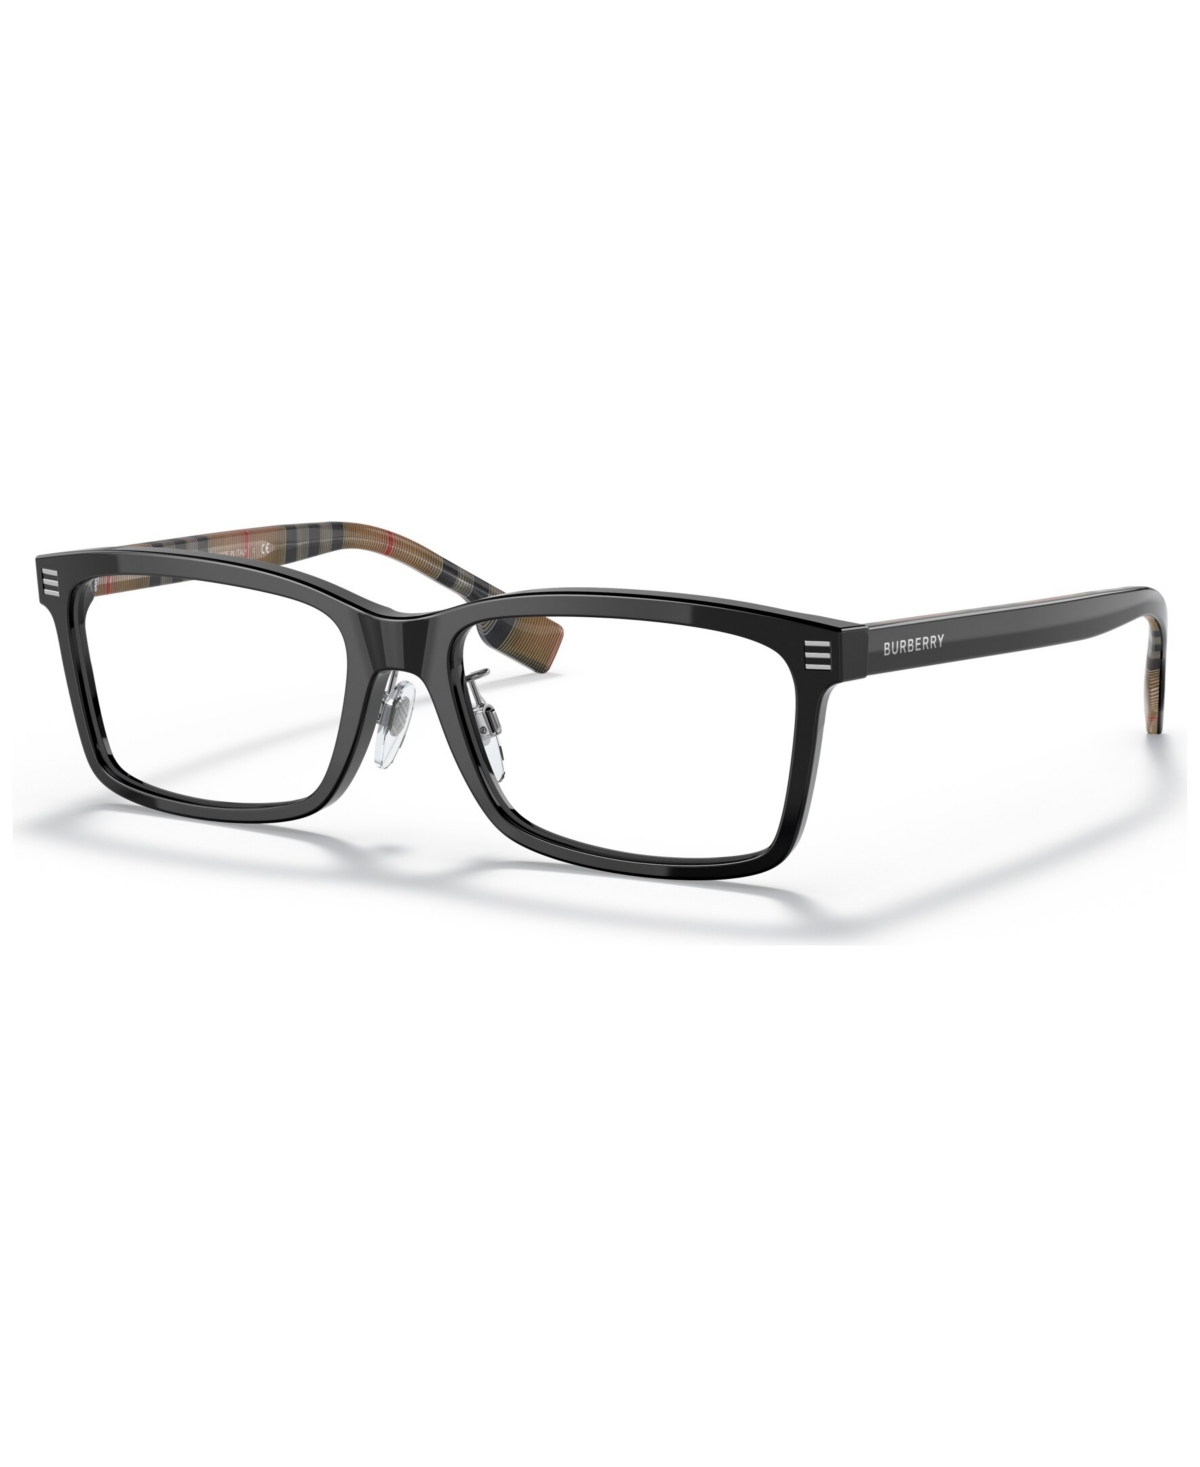 Men's Foster Eyeglasses, BE2352F 56 - Black